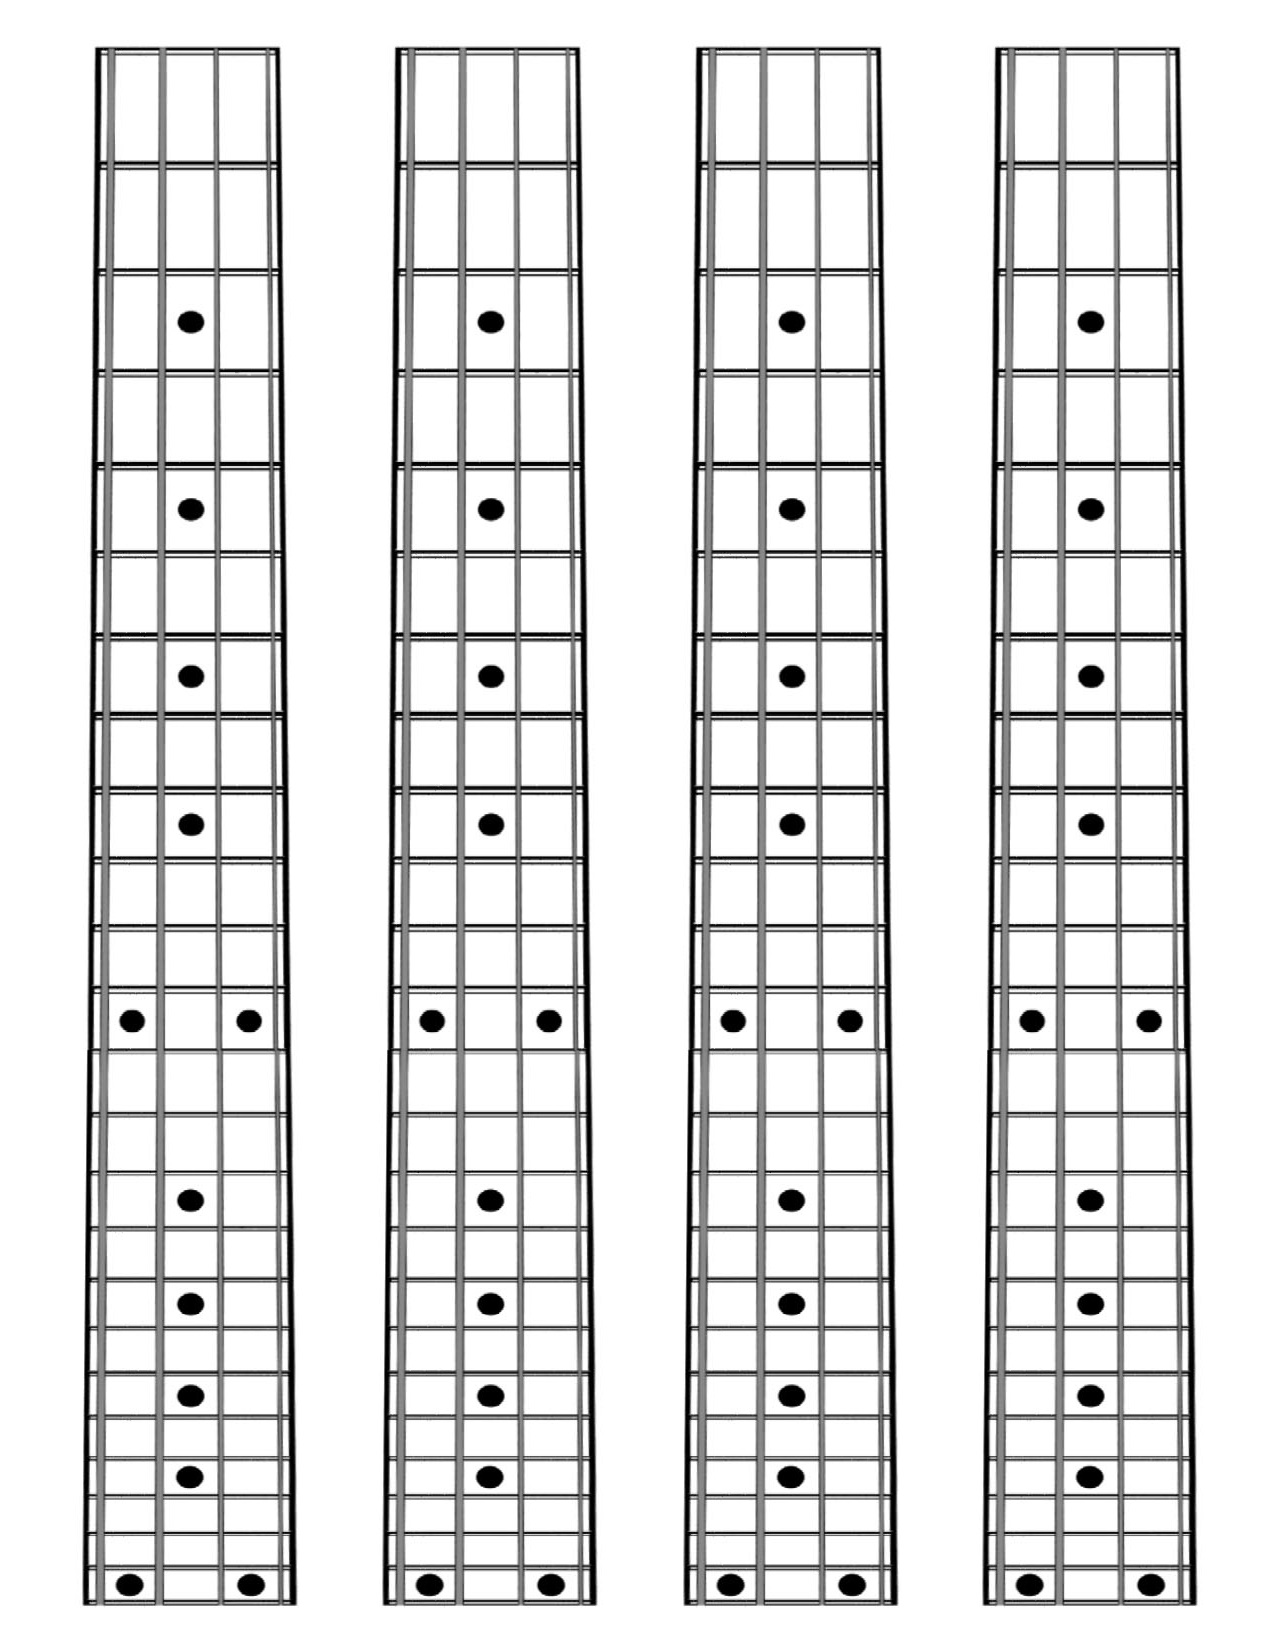 Bass Guitar Fretboard Diagram Printable